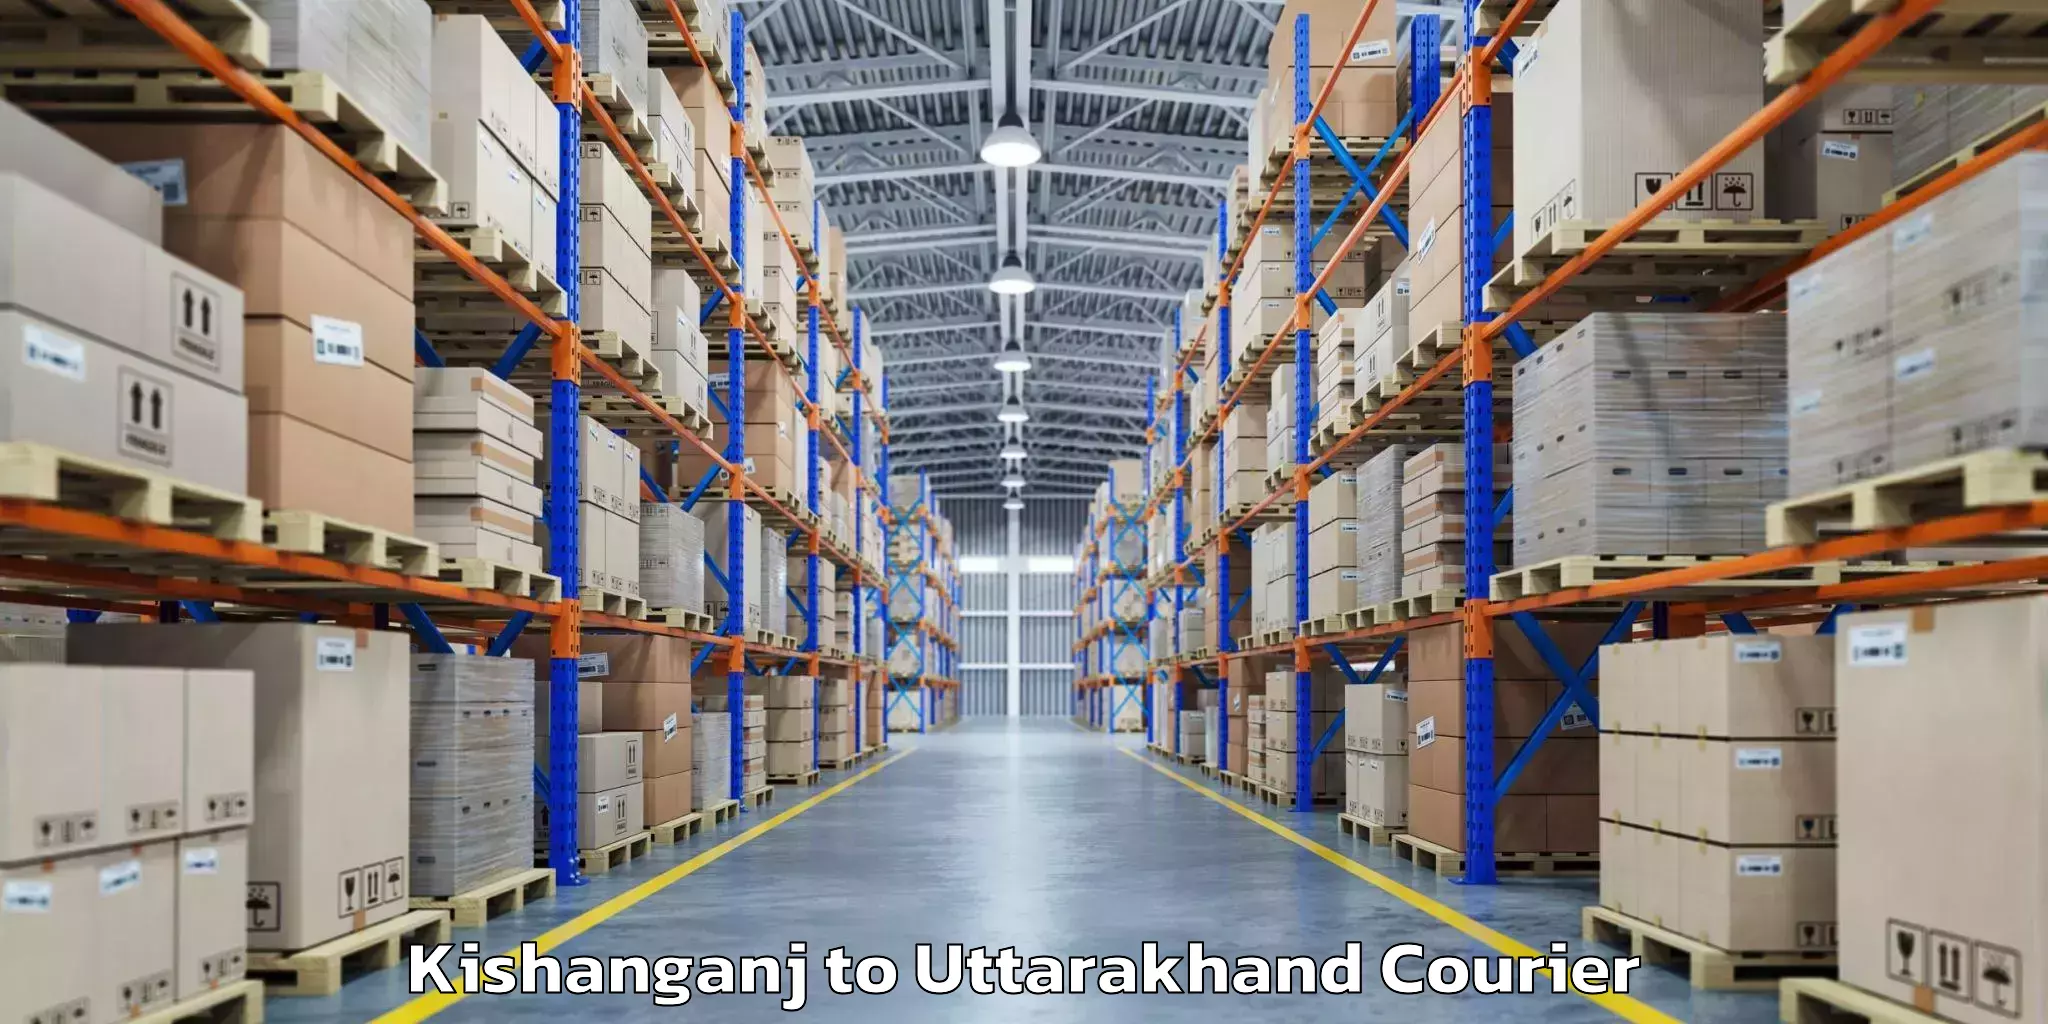 Luggage transport consulting Kishanganj to Uttarakhand